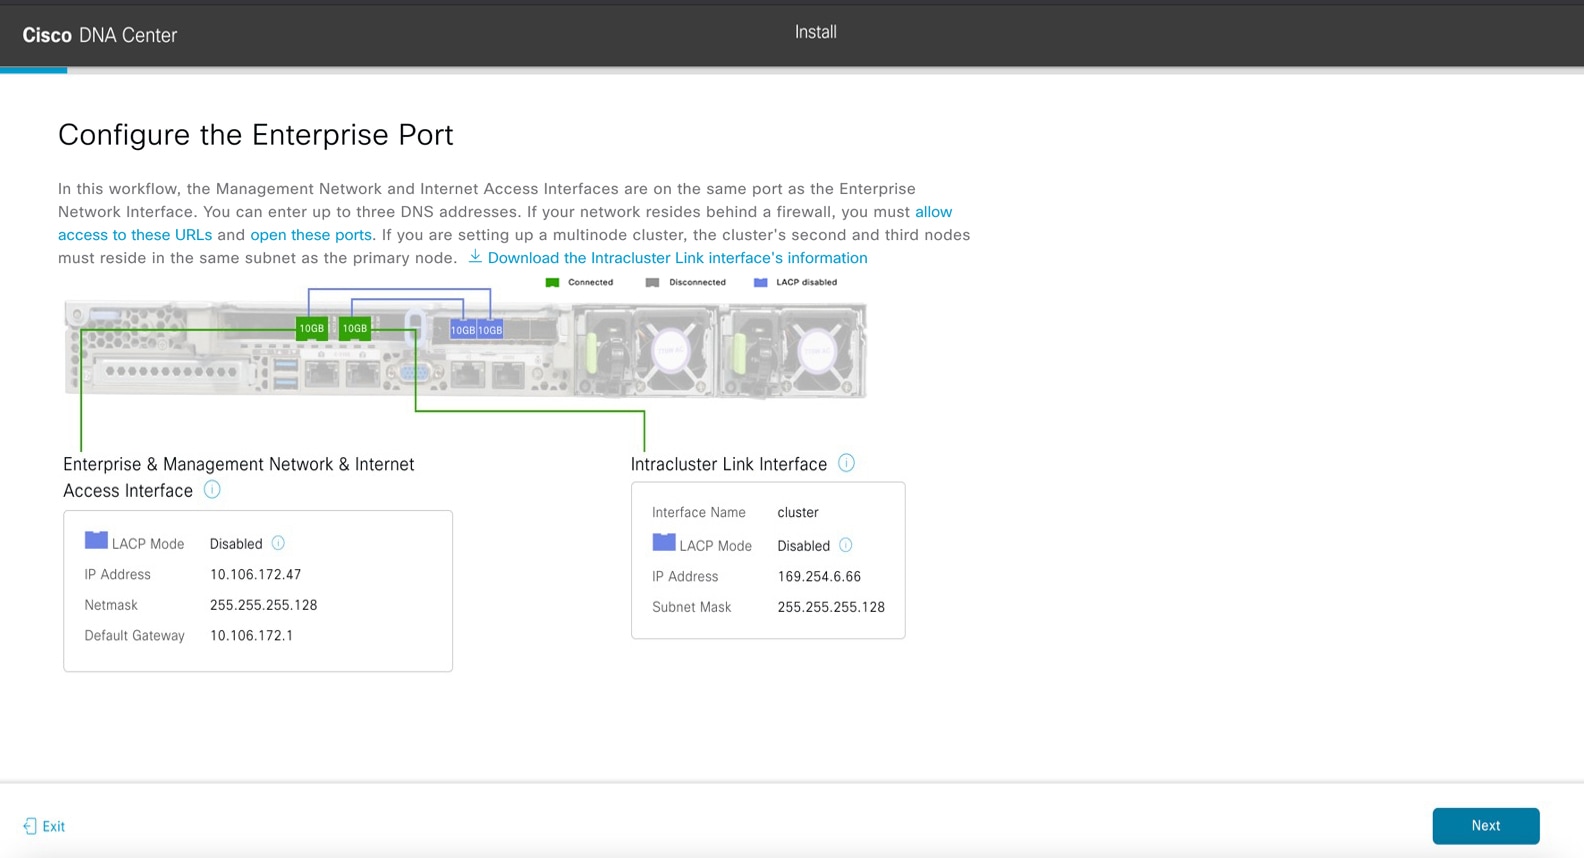 [Configure the Enterprise Port] 画面には、エンタープライズポートでのエンタープライズ、管理、およびインターネット アクセス インターフェイスの設定手順が表示されます。